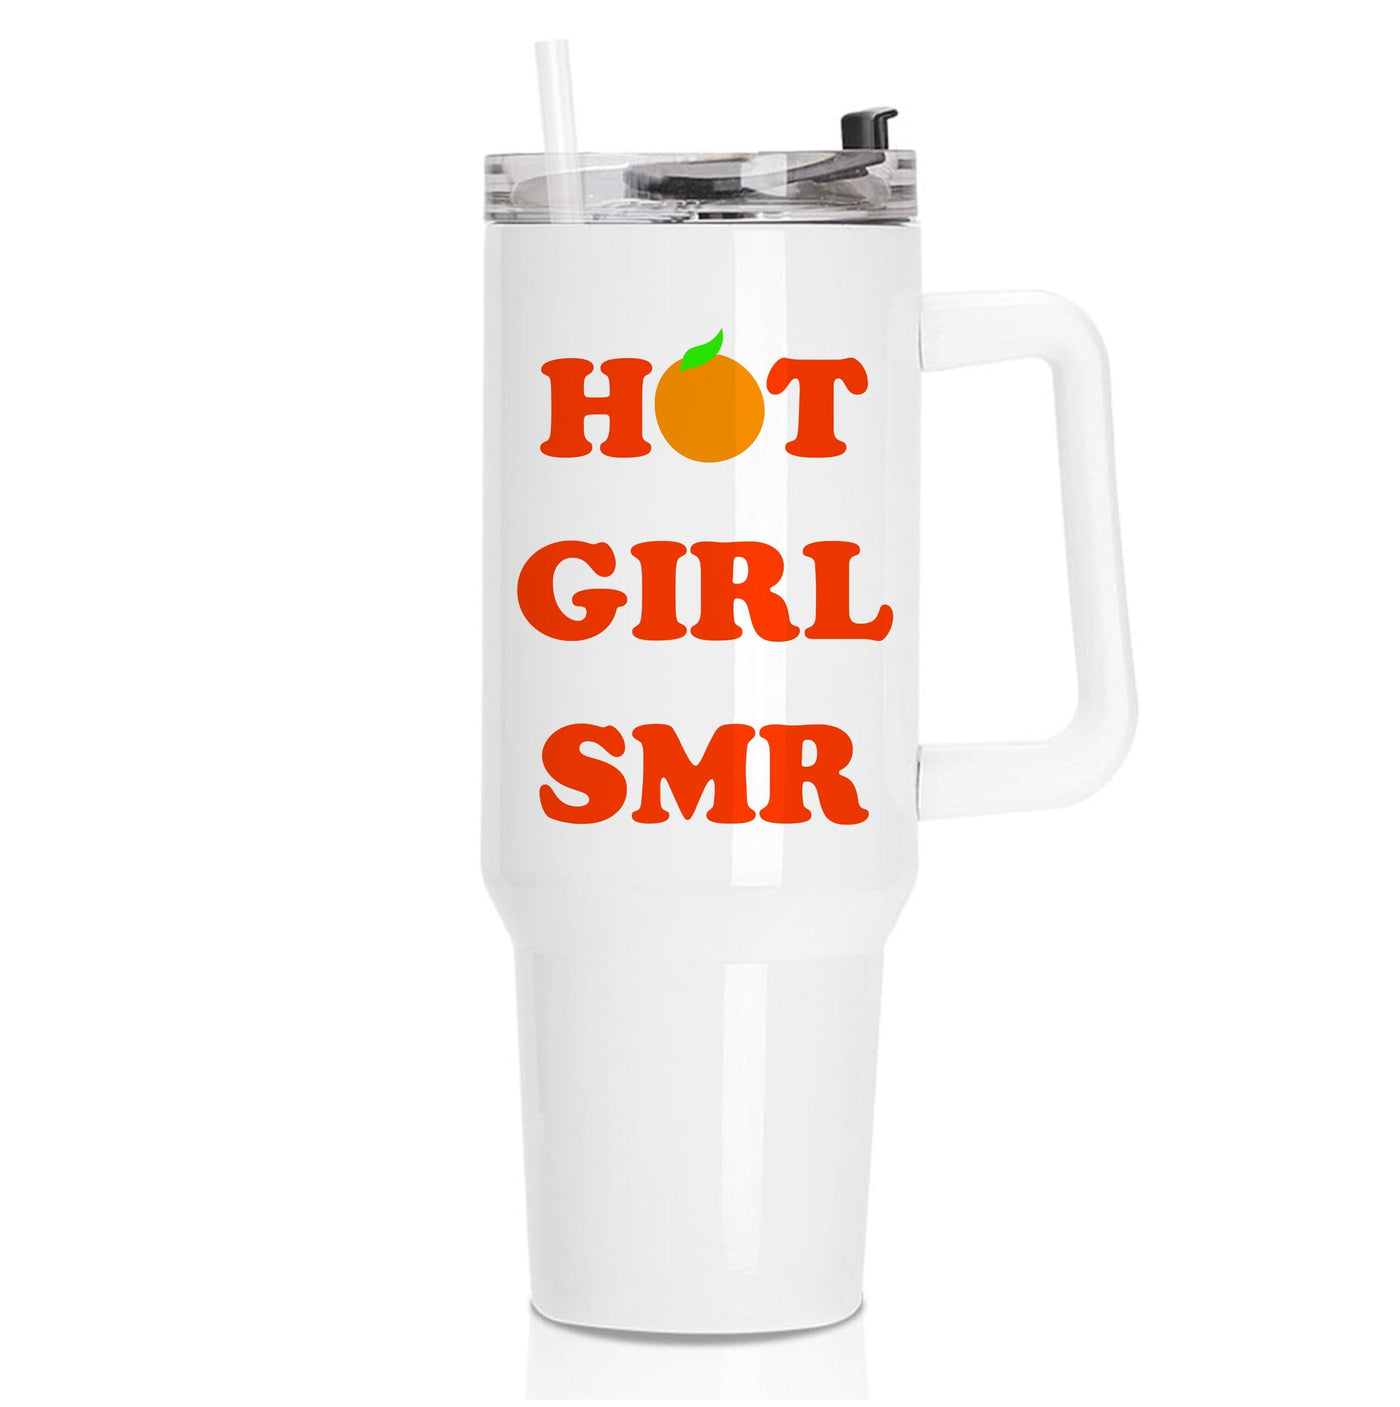 Hot Girl SMR - Summer Tumbler